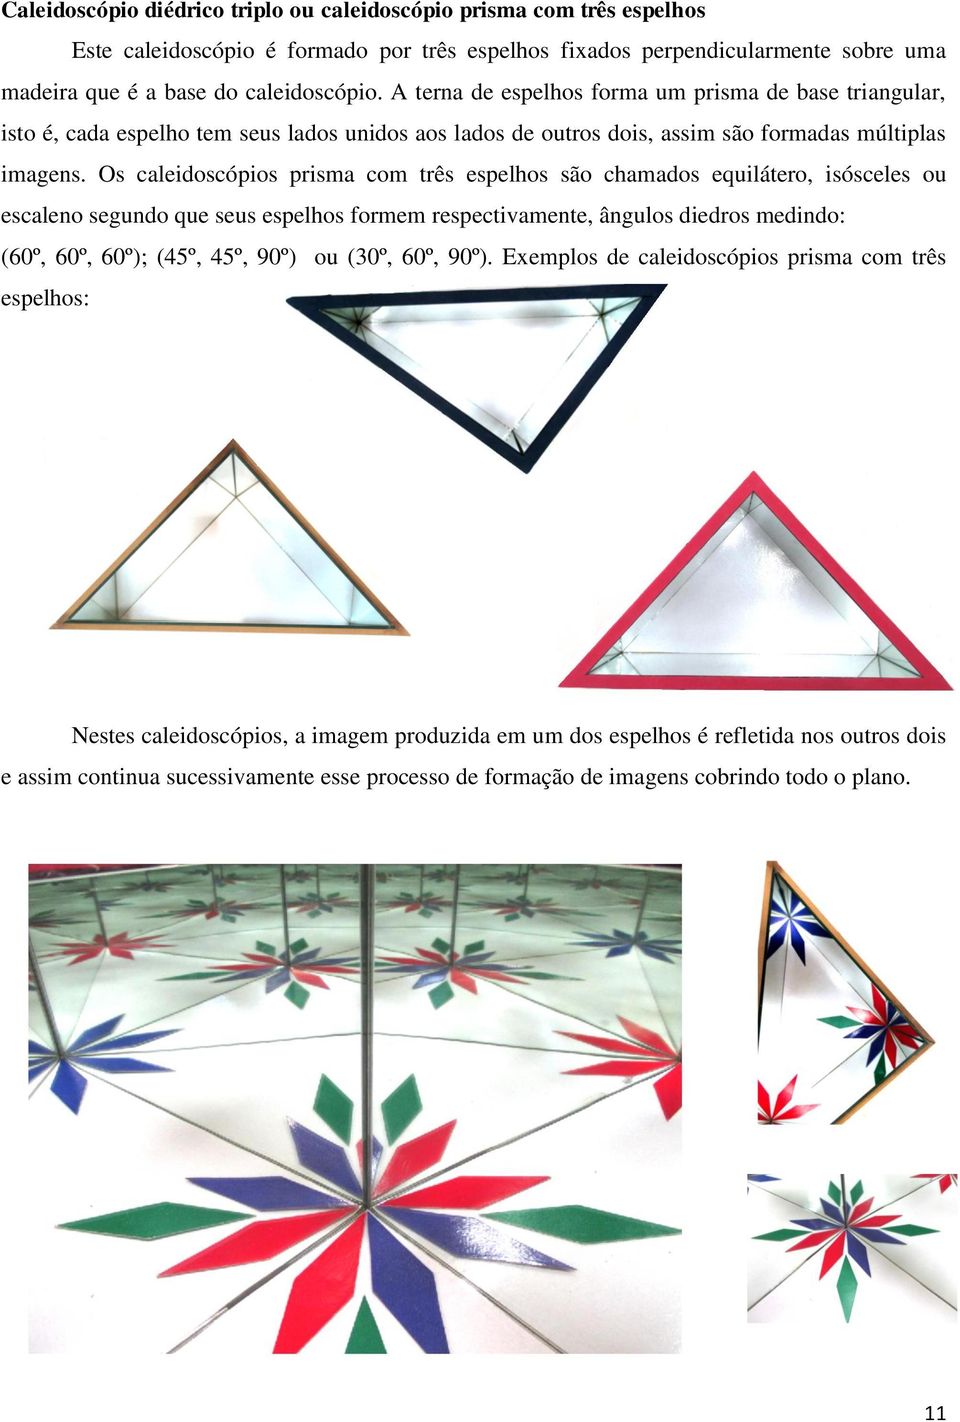 Os caleidoscópios prisma com três espelhos são chamados equilátero, isósceles ou escaleno segundo que seus espelhos formem respectivamente, ângulos diedros medindo: (60º, 60º, 60º); (45º, 45º, 90º)